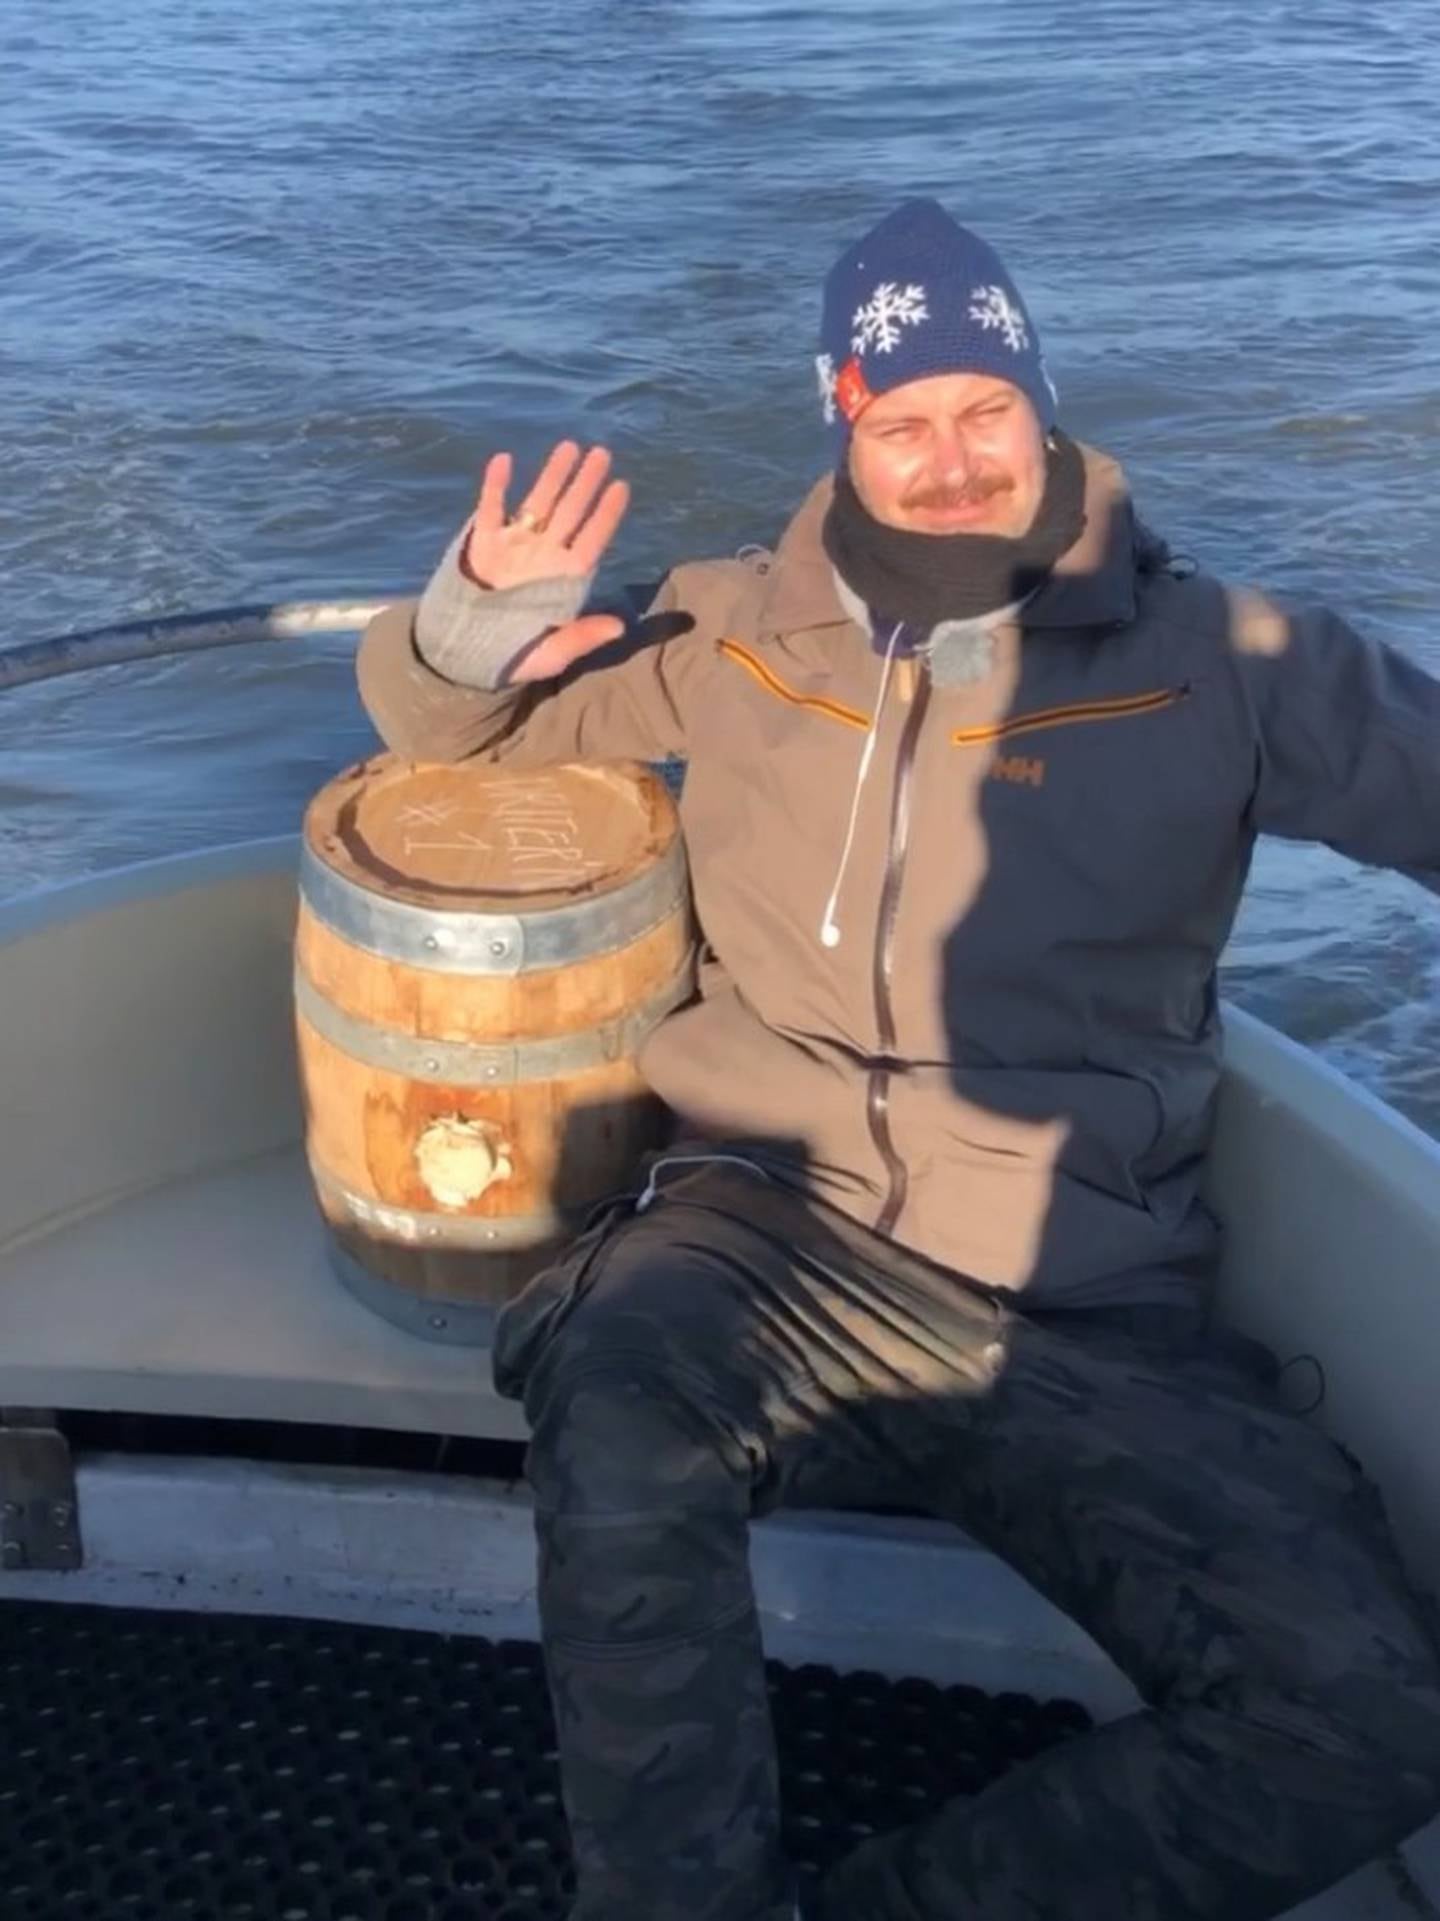 En fornøyd Magnus Stensvik Wilhelmsen under sjøreisen med eiketønna med akevitt som sener har blitt til «Akevitt som har krysset Driter'n 2 ganger».